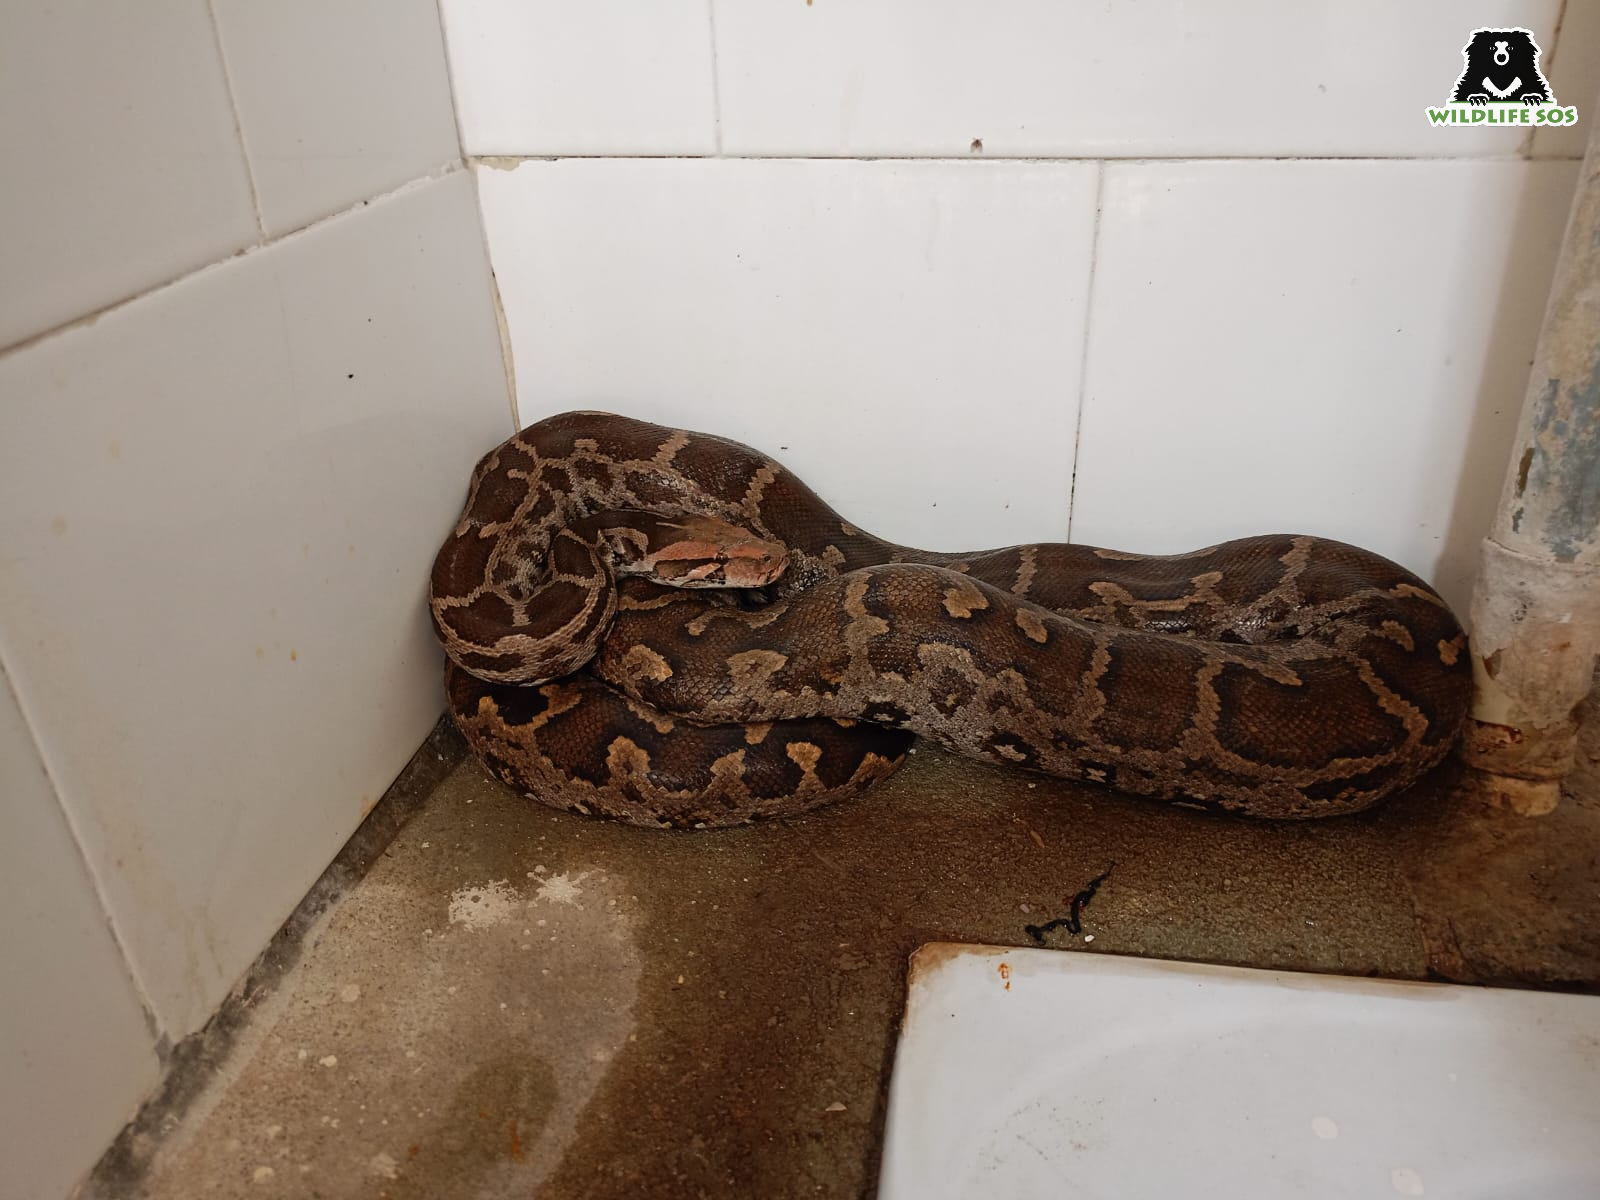 Python found in restroom